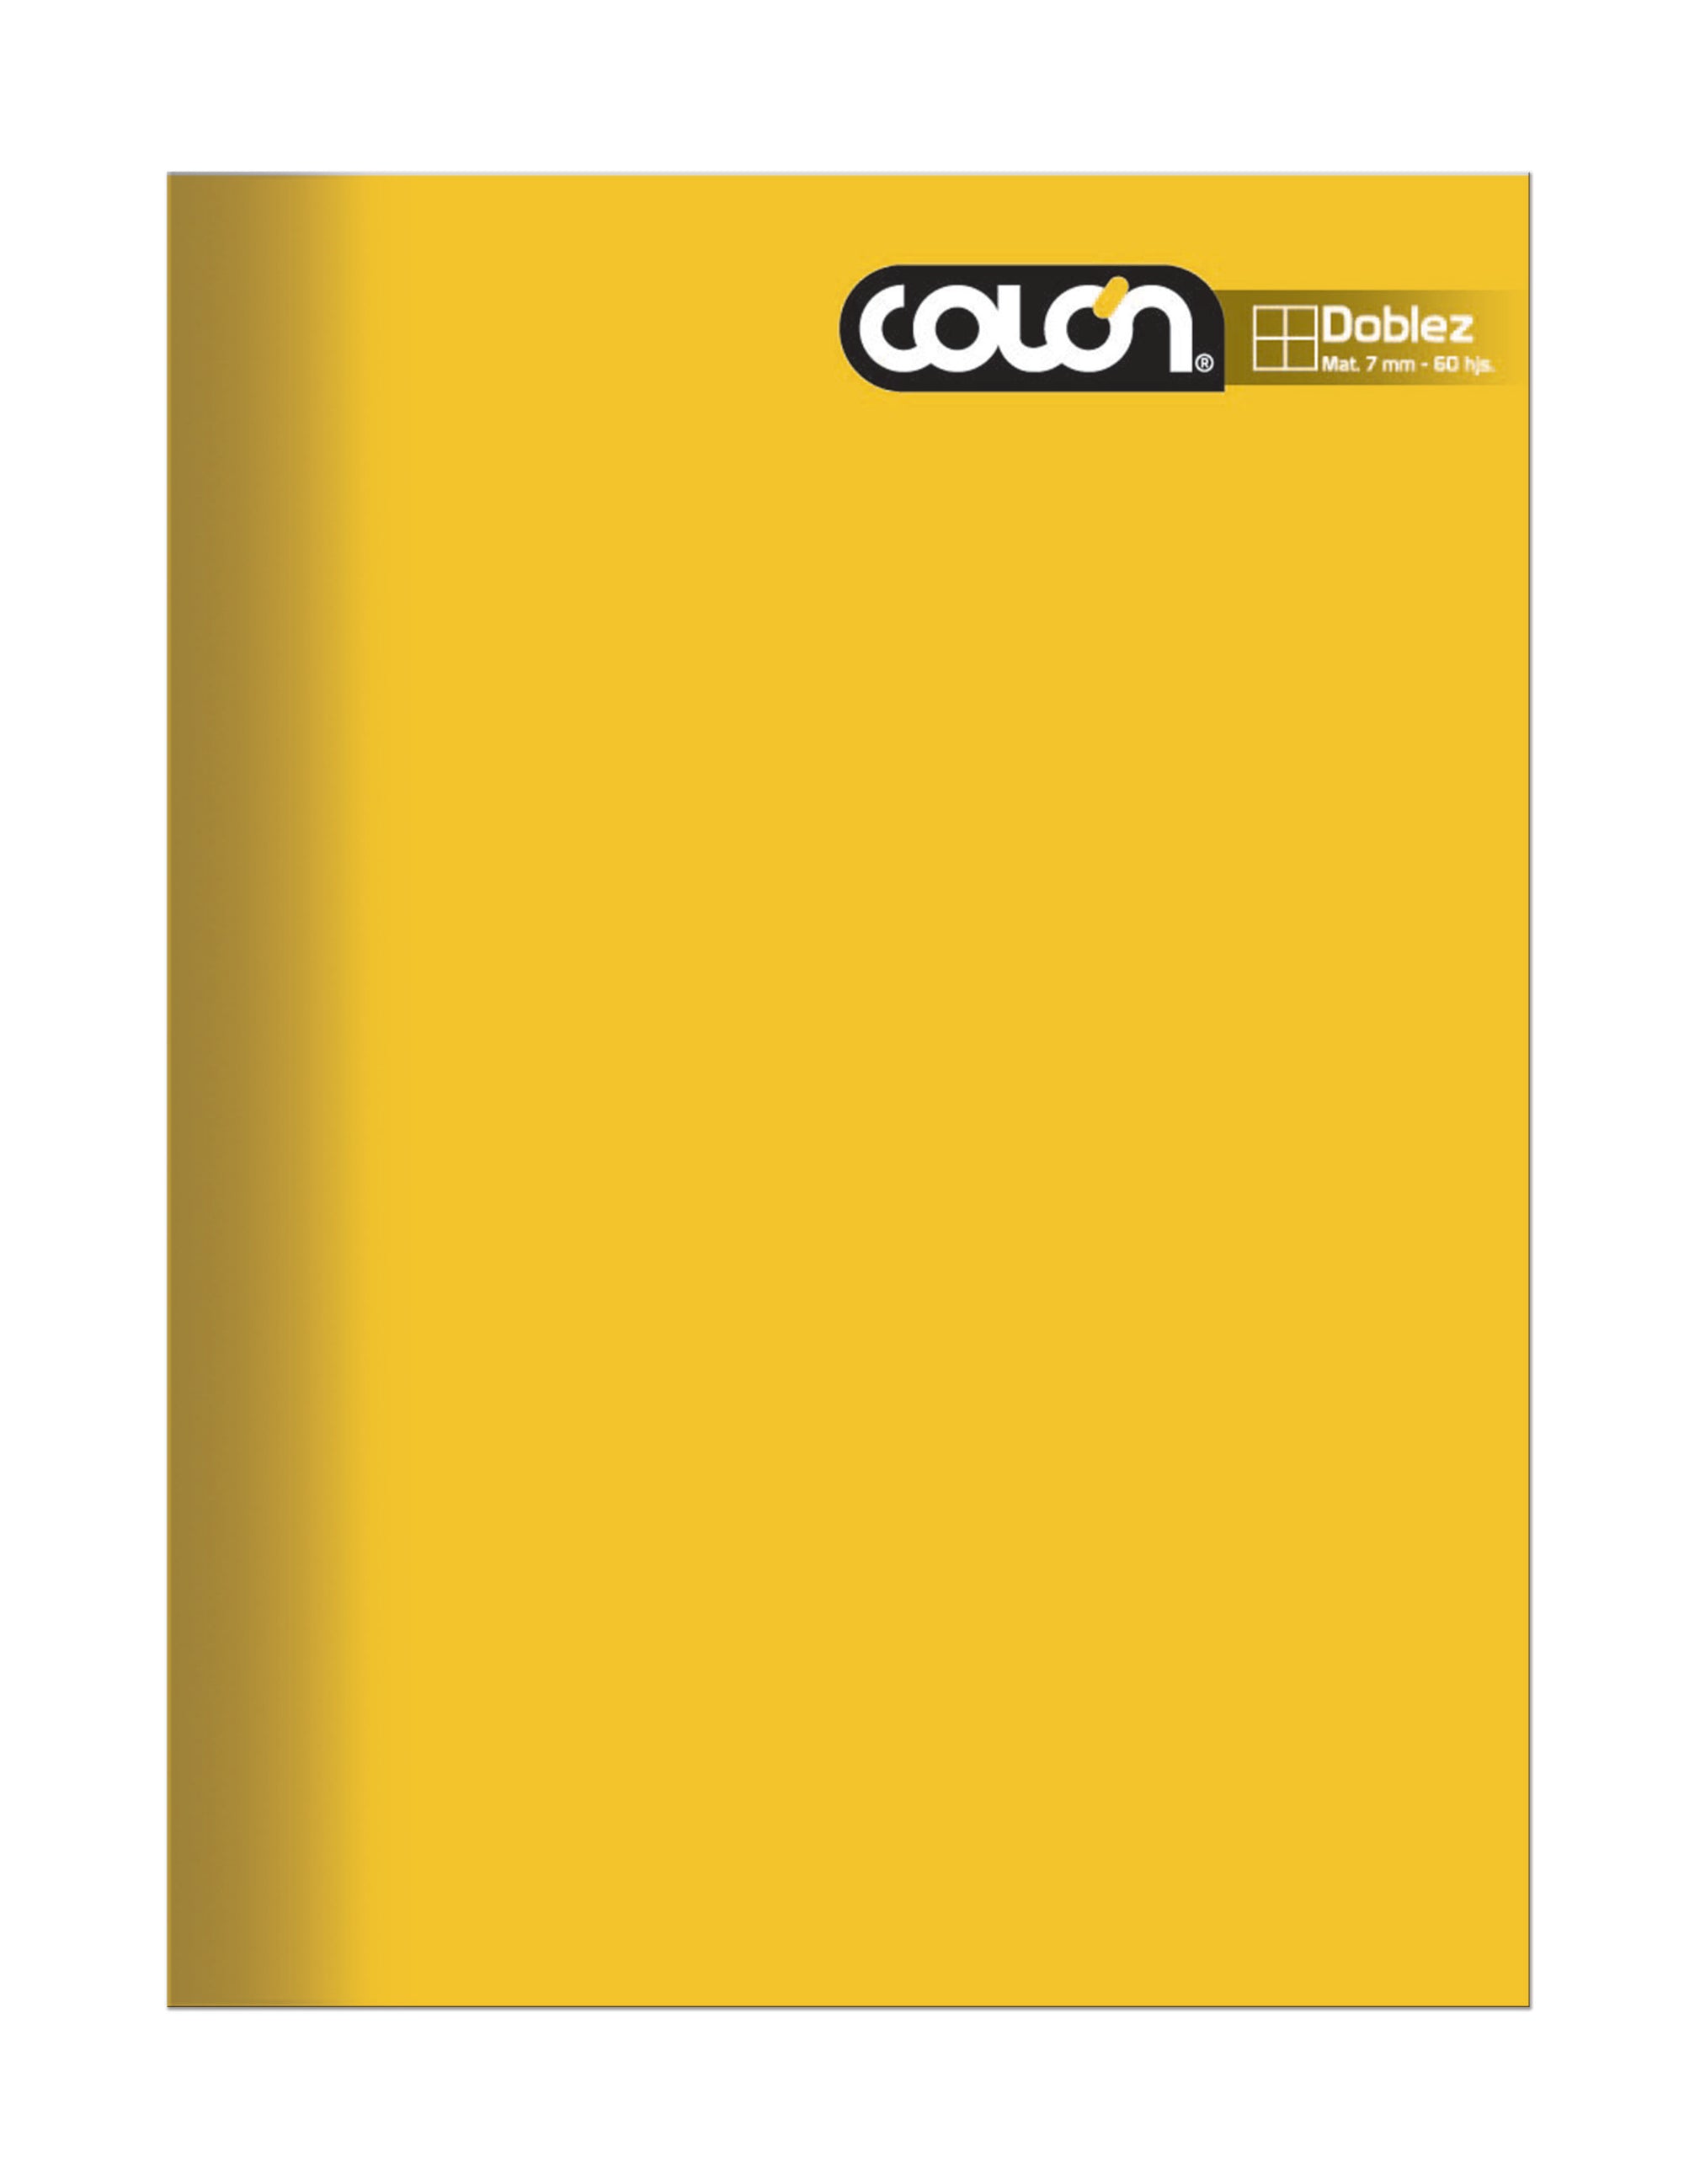 Cuaderno doblez colon liso 7mm 100hj amarillo